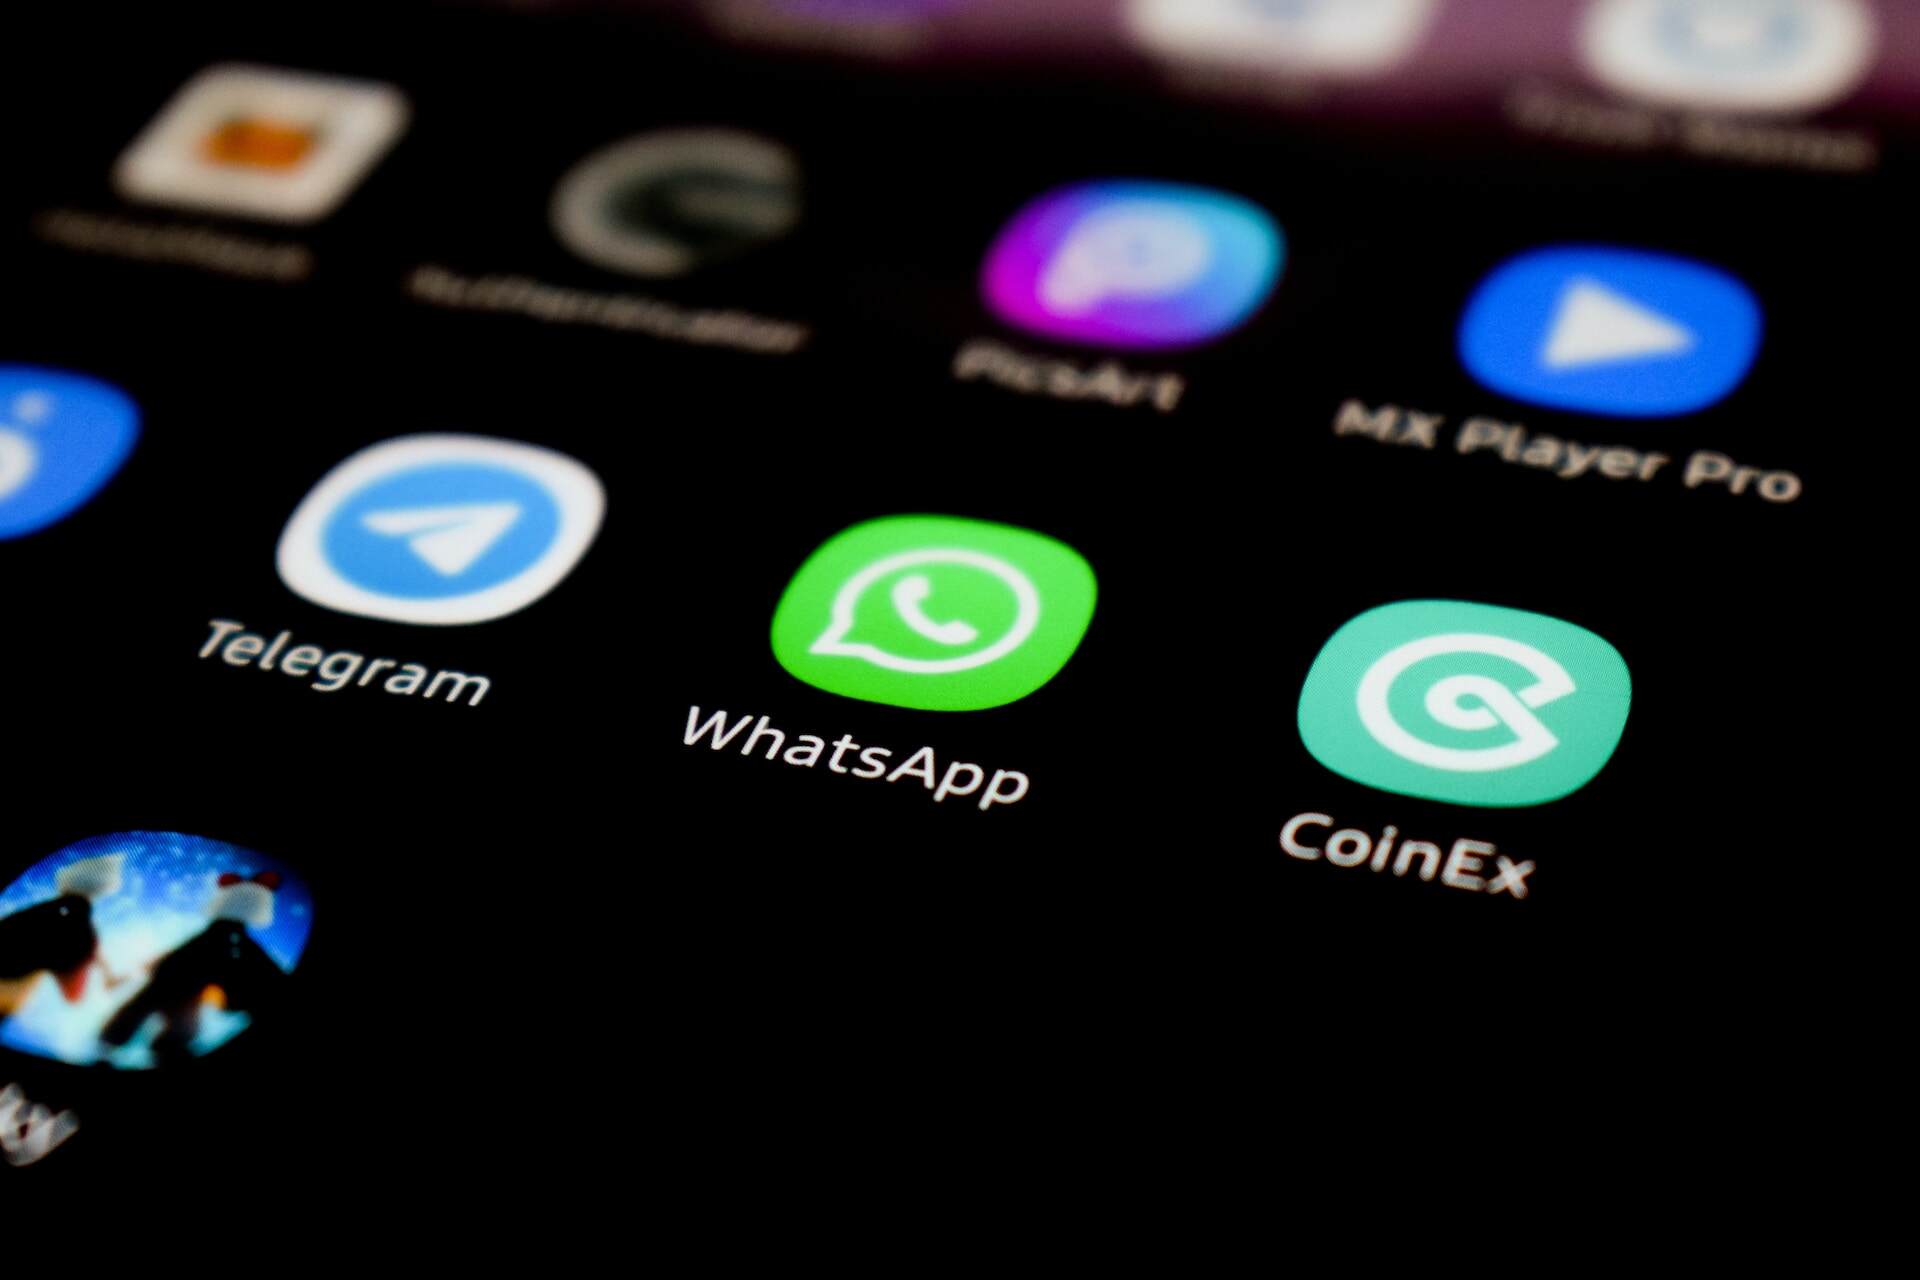 В WhatsApp для ОС Android появится поиск по датам сообщений